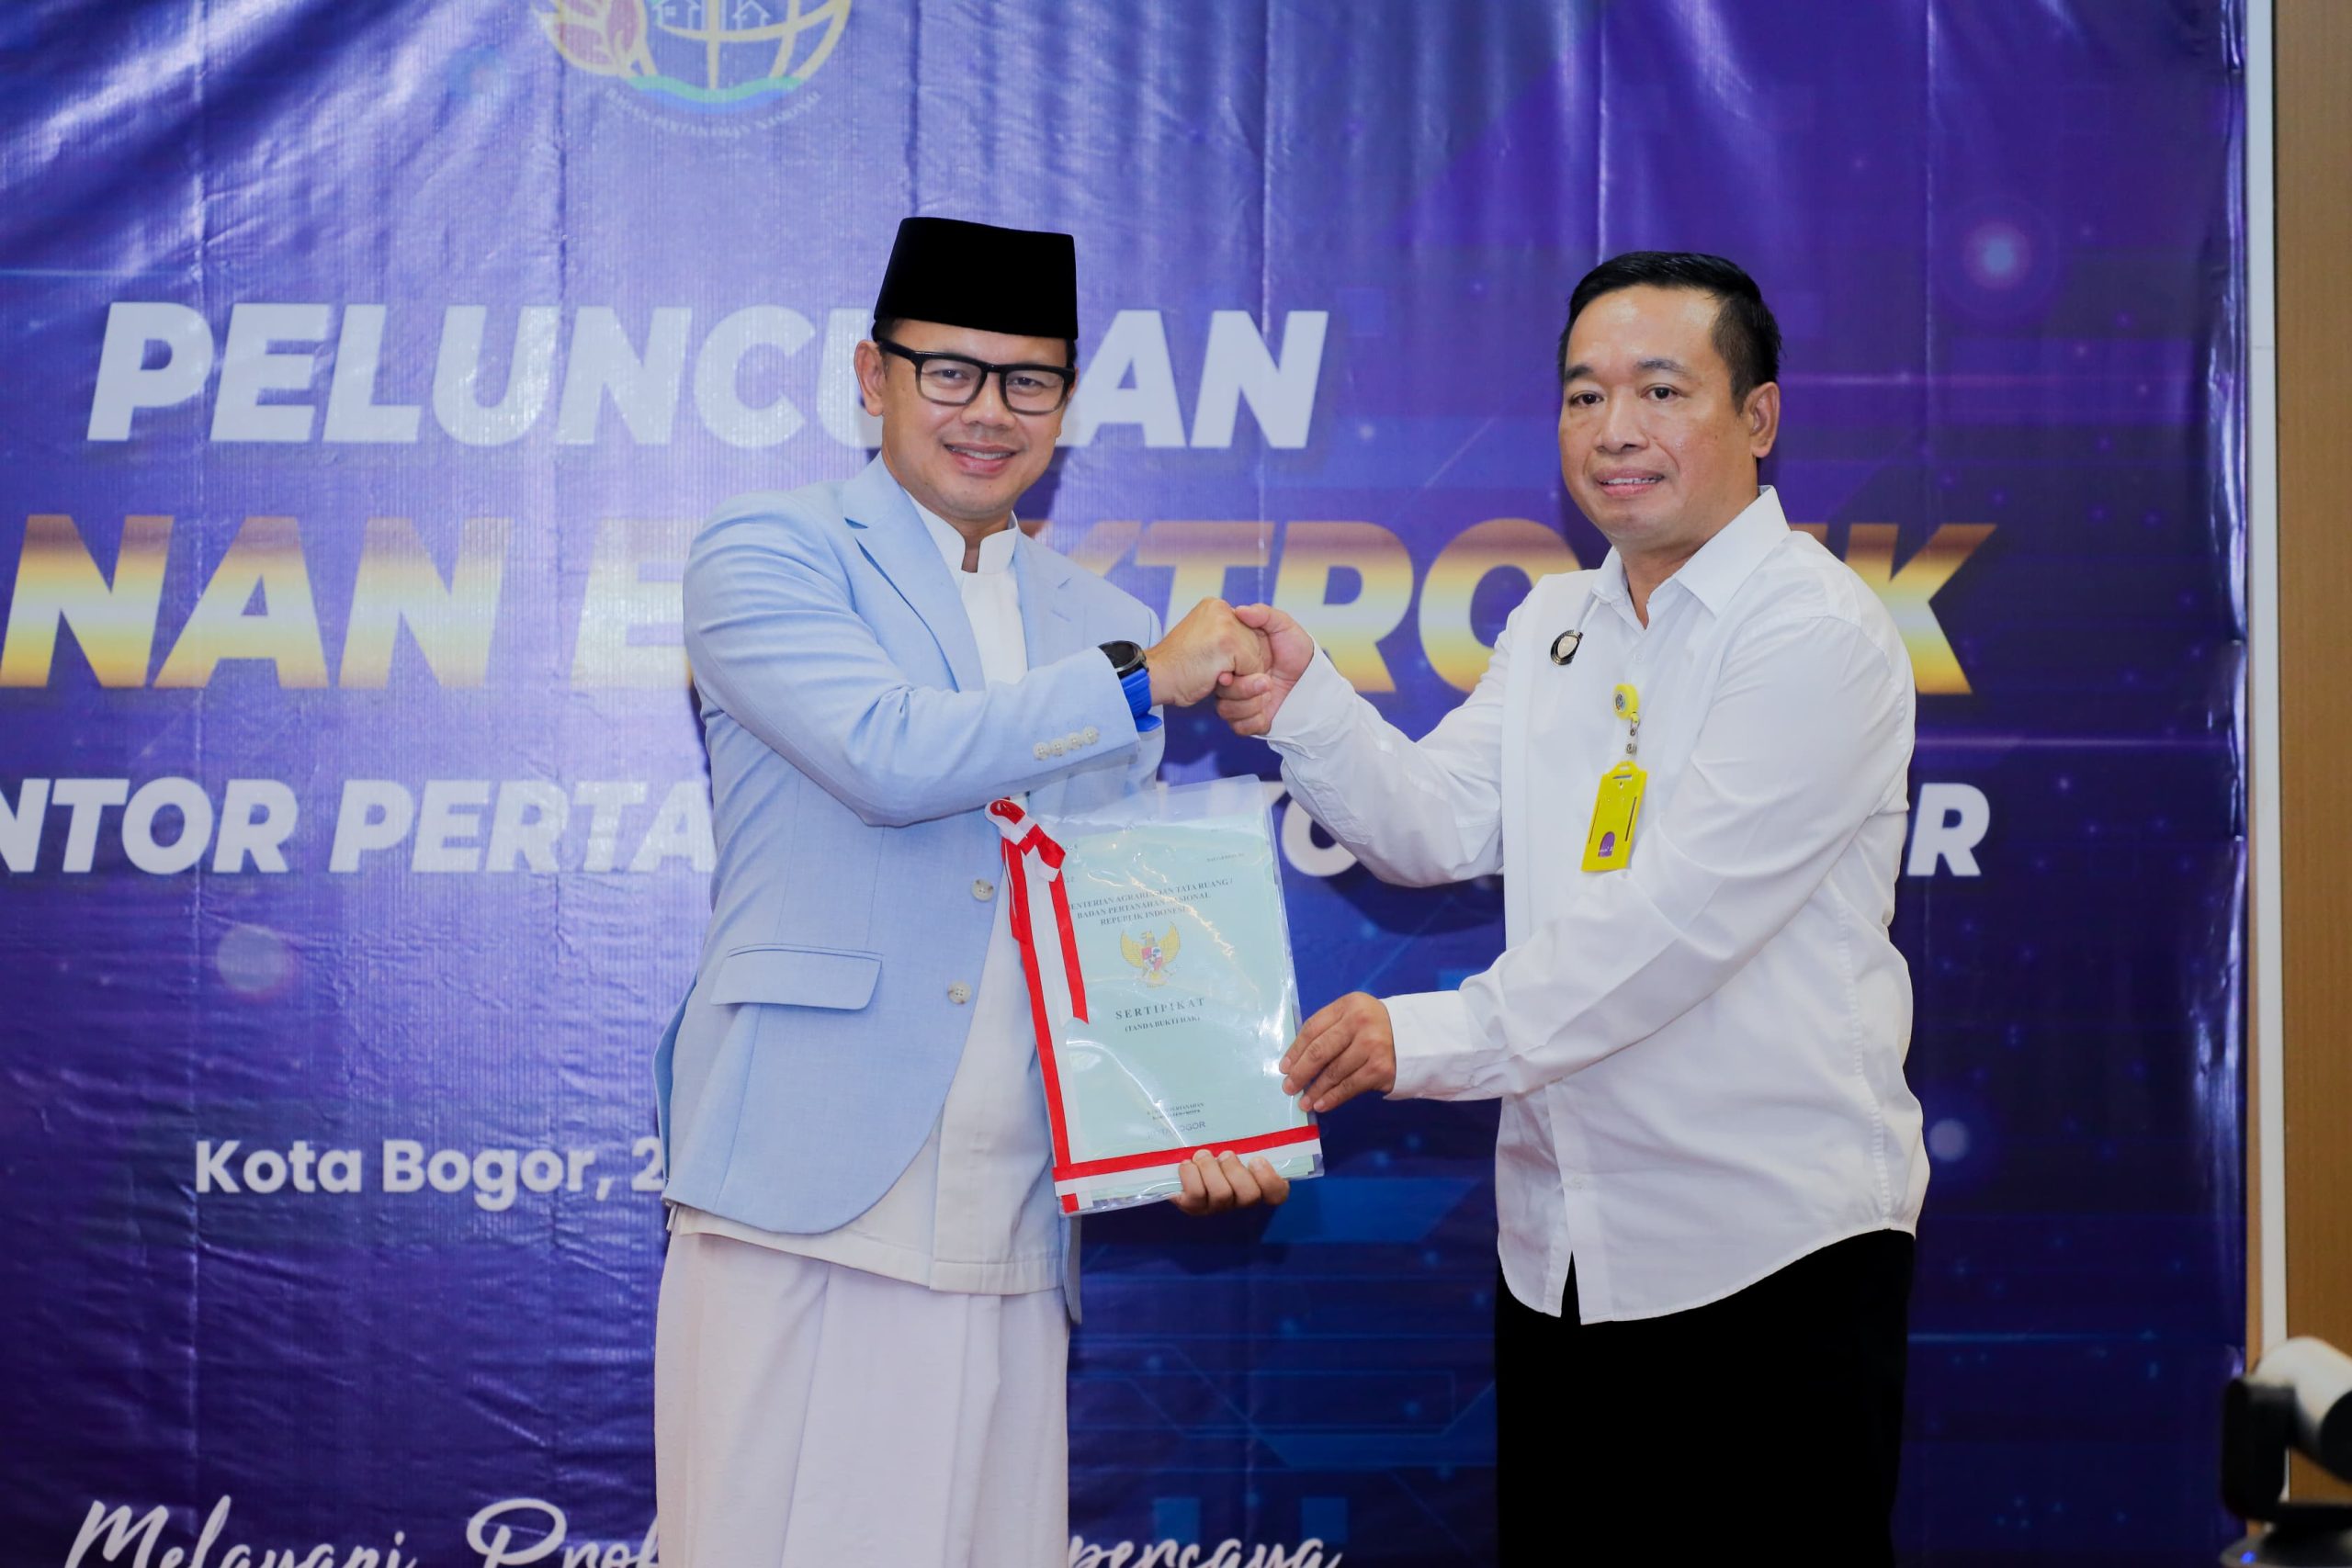 Kantah Kota Bogor Buka Layanan Penerbitan Sertipikat Tanah Elektronik